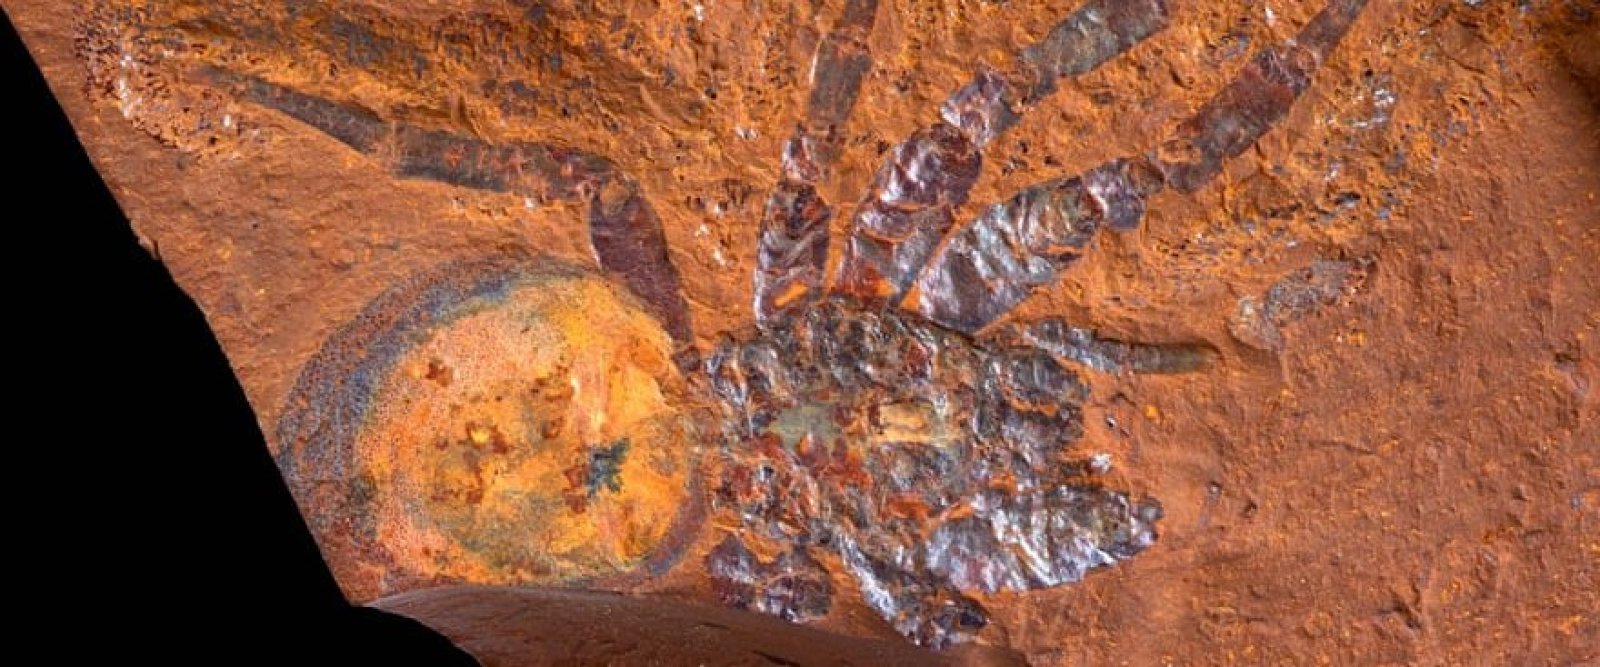 Vivió hace 16 millones de años: Encuentran fósil de araña gigante en Australia